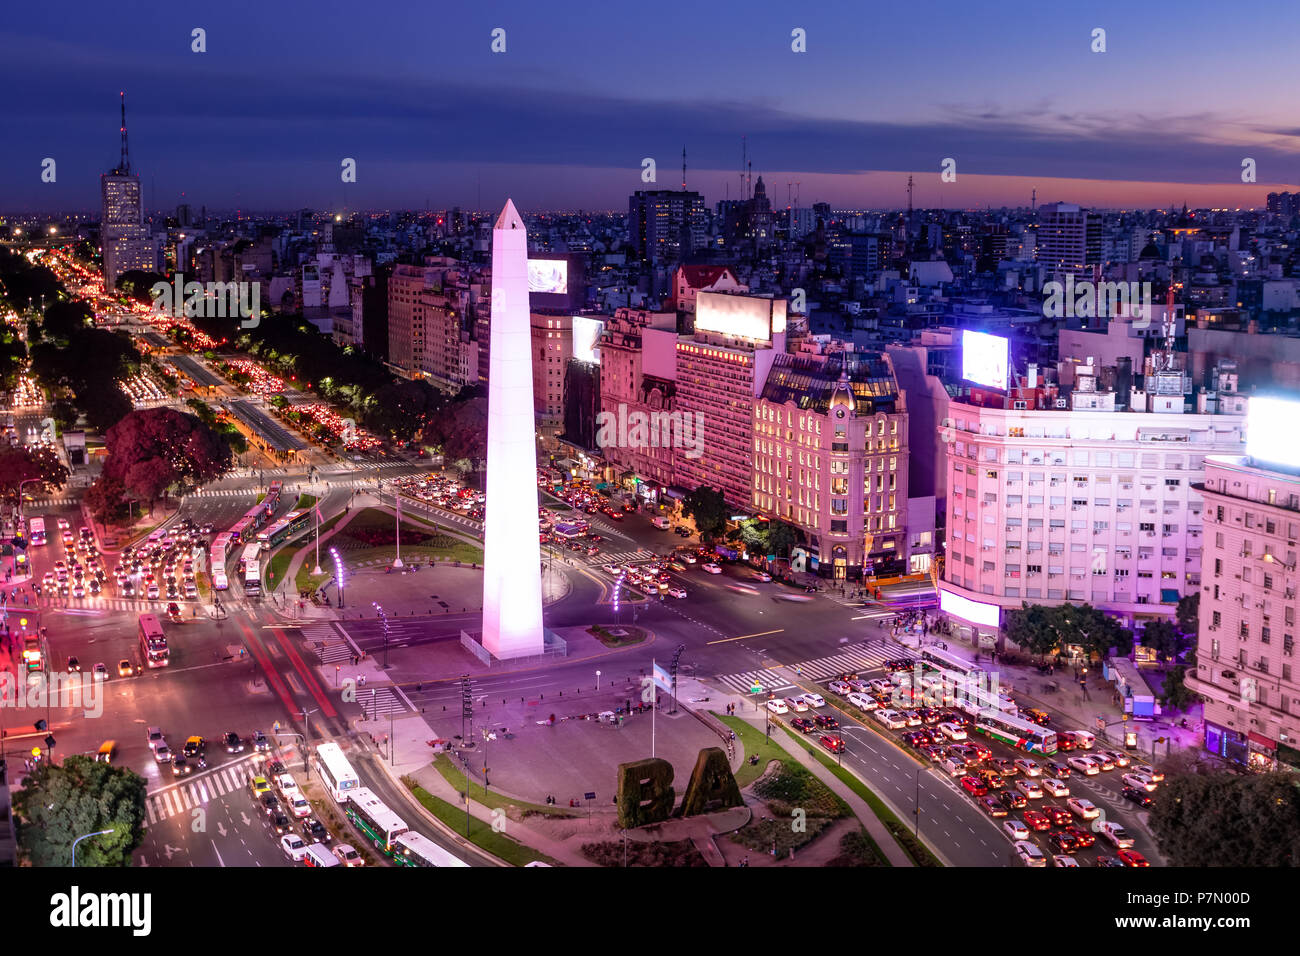 Vue aérienne de Buenos Aires et l'avenue 9 de julio, la nuit avec lumière pourpre - Buenos Aires, Argentine Banque D'Images